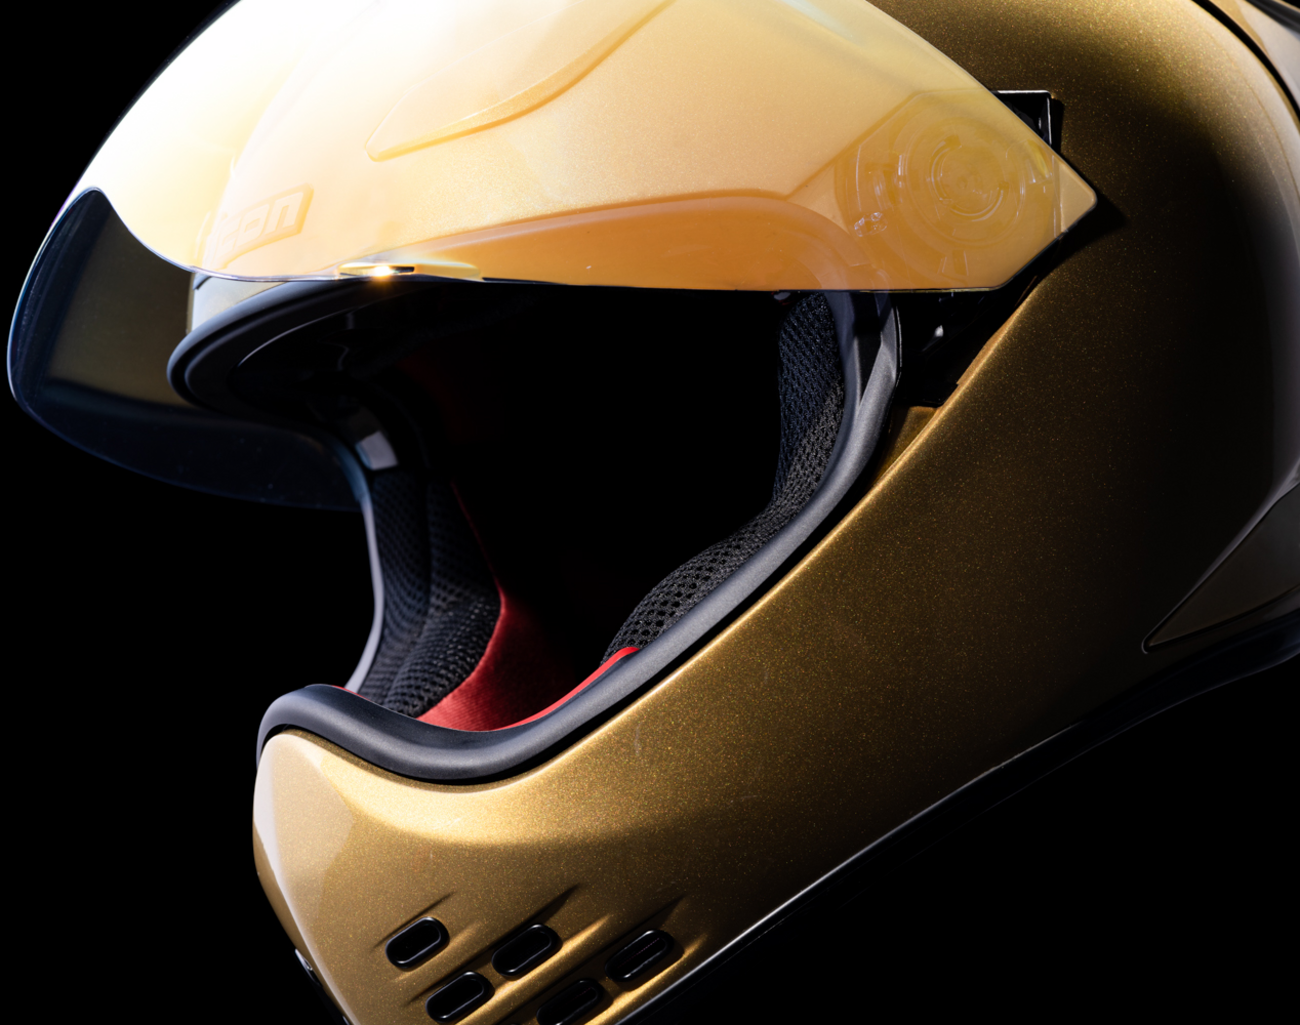 ICON Domain™ Helmet - Cornelius - Gold - Large 0101-14968